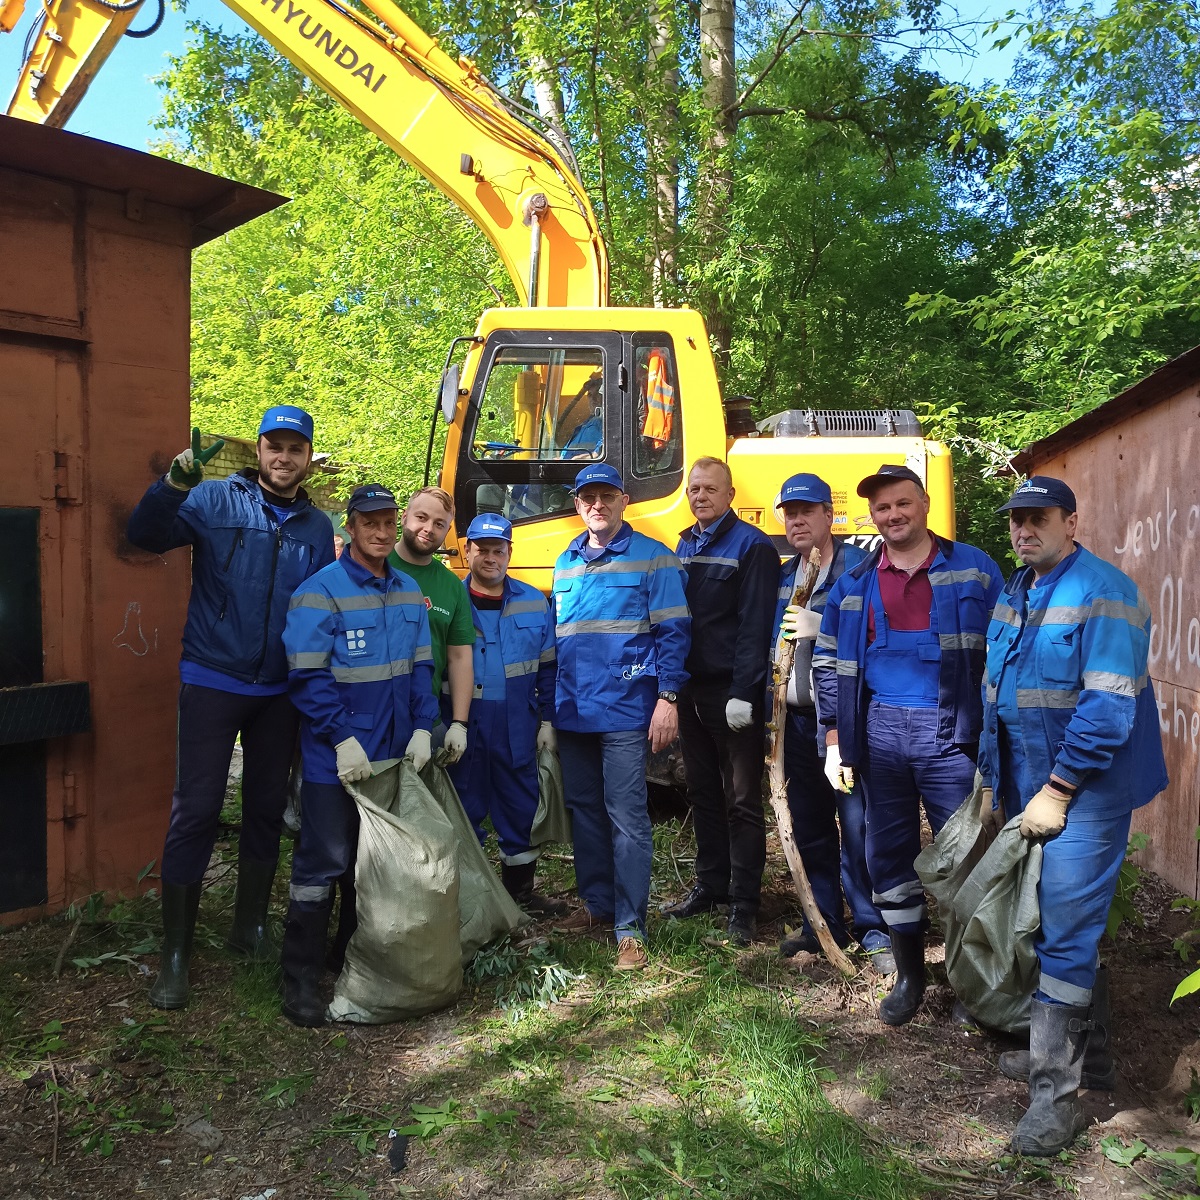 В субботнике участвовали сотрудники Нижегородского водоканала, активисты проекта "Чистая страна"и представителями администрации